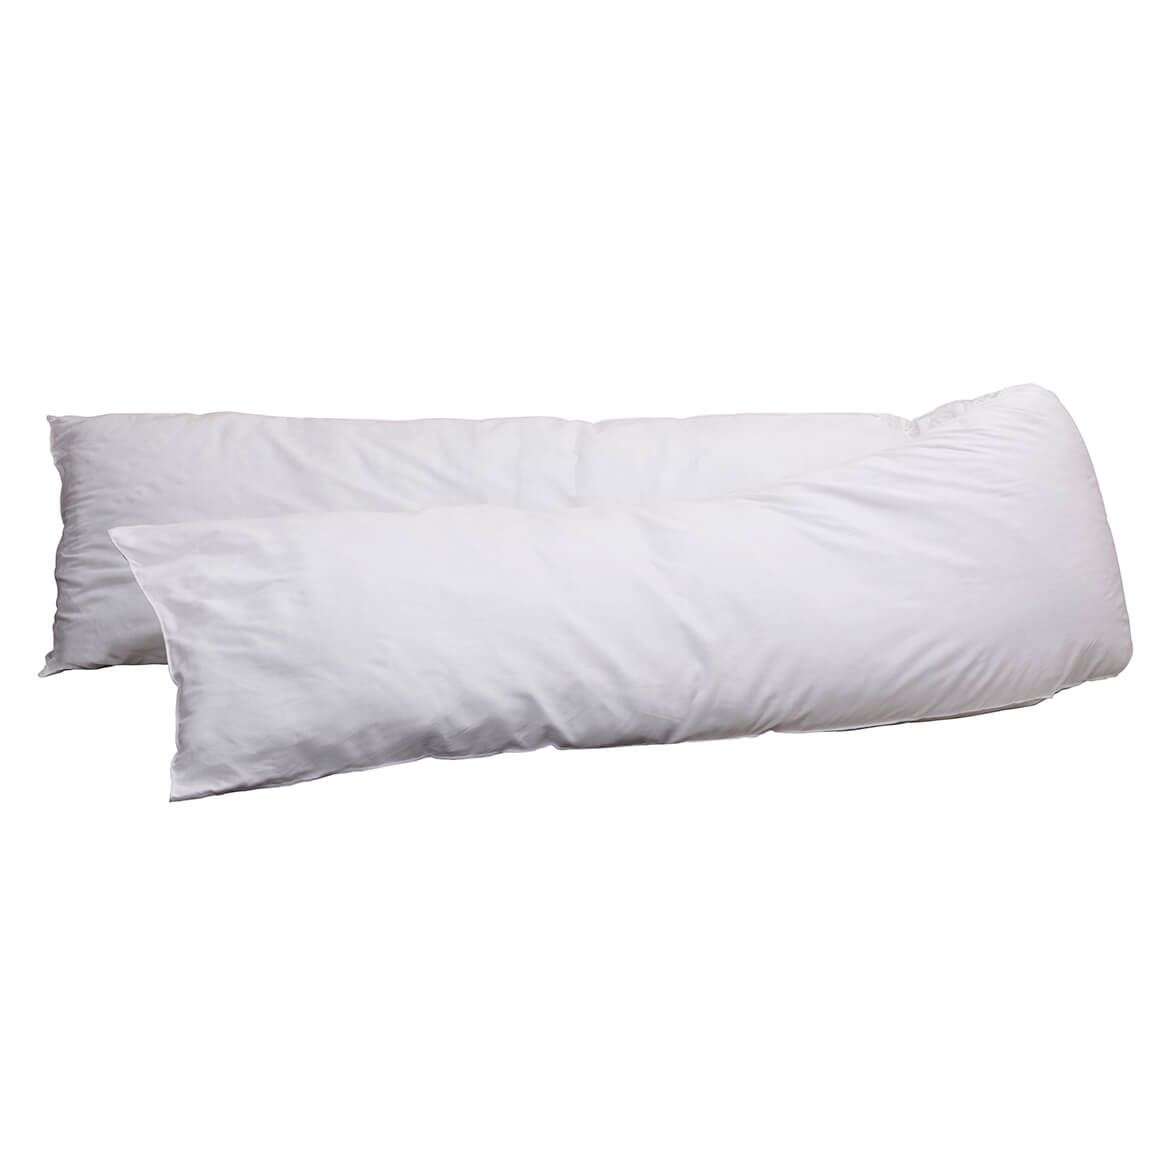 Wrap-Around Pillow + '-' + 331315